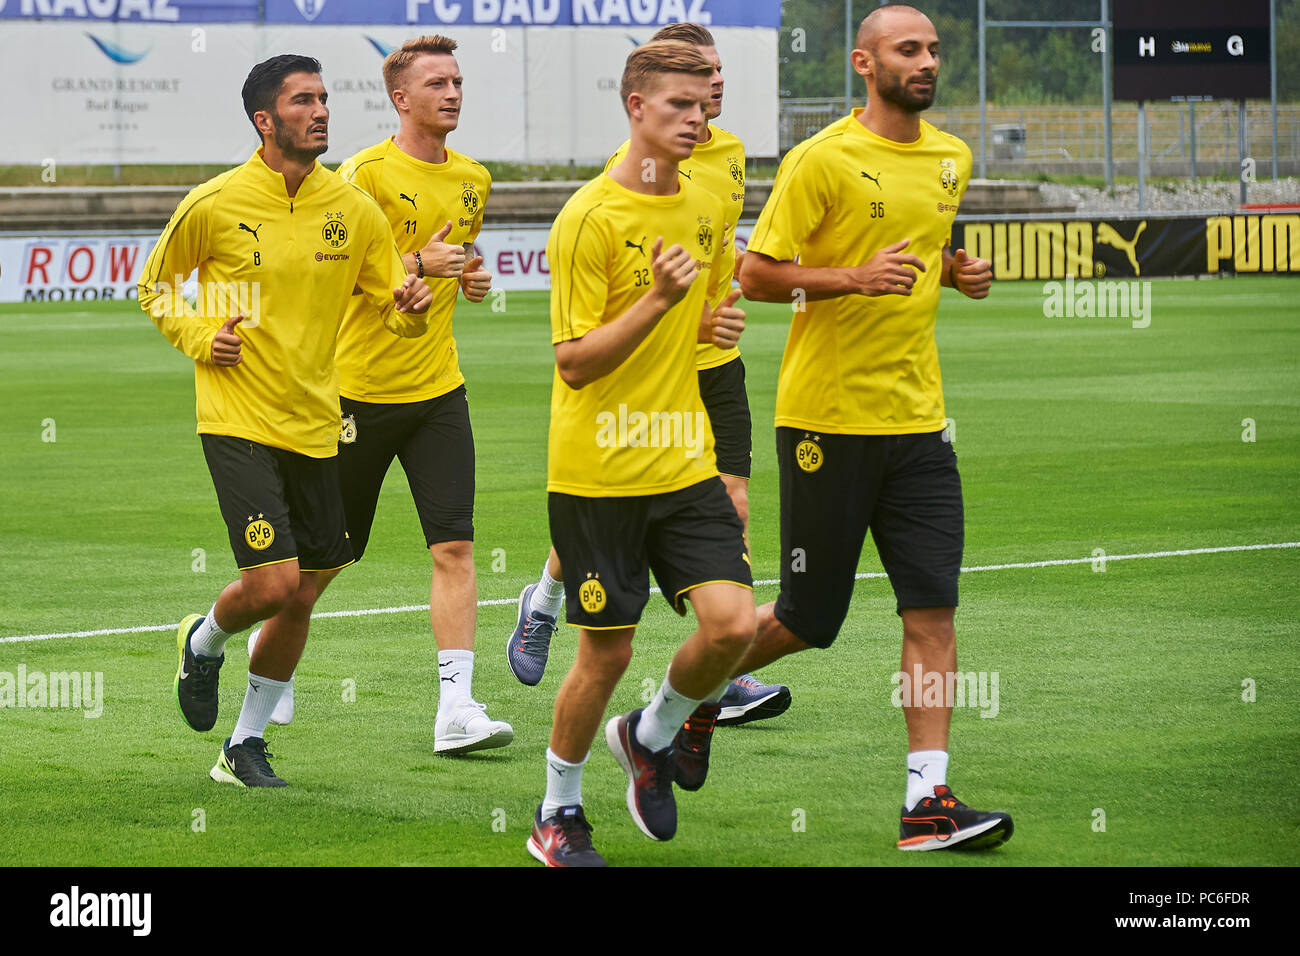 Borussia Dortmunds Team Marco Reus Stockfotos und -bilder Kaufen - Alamy